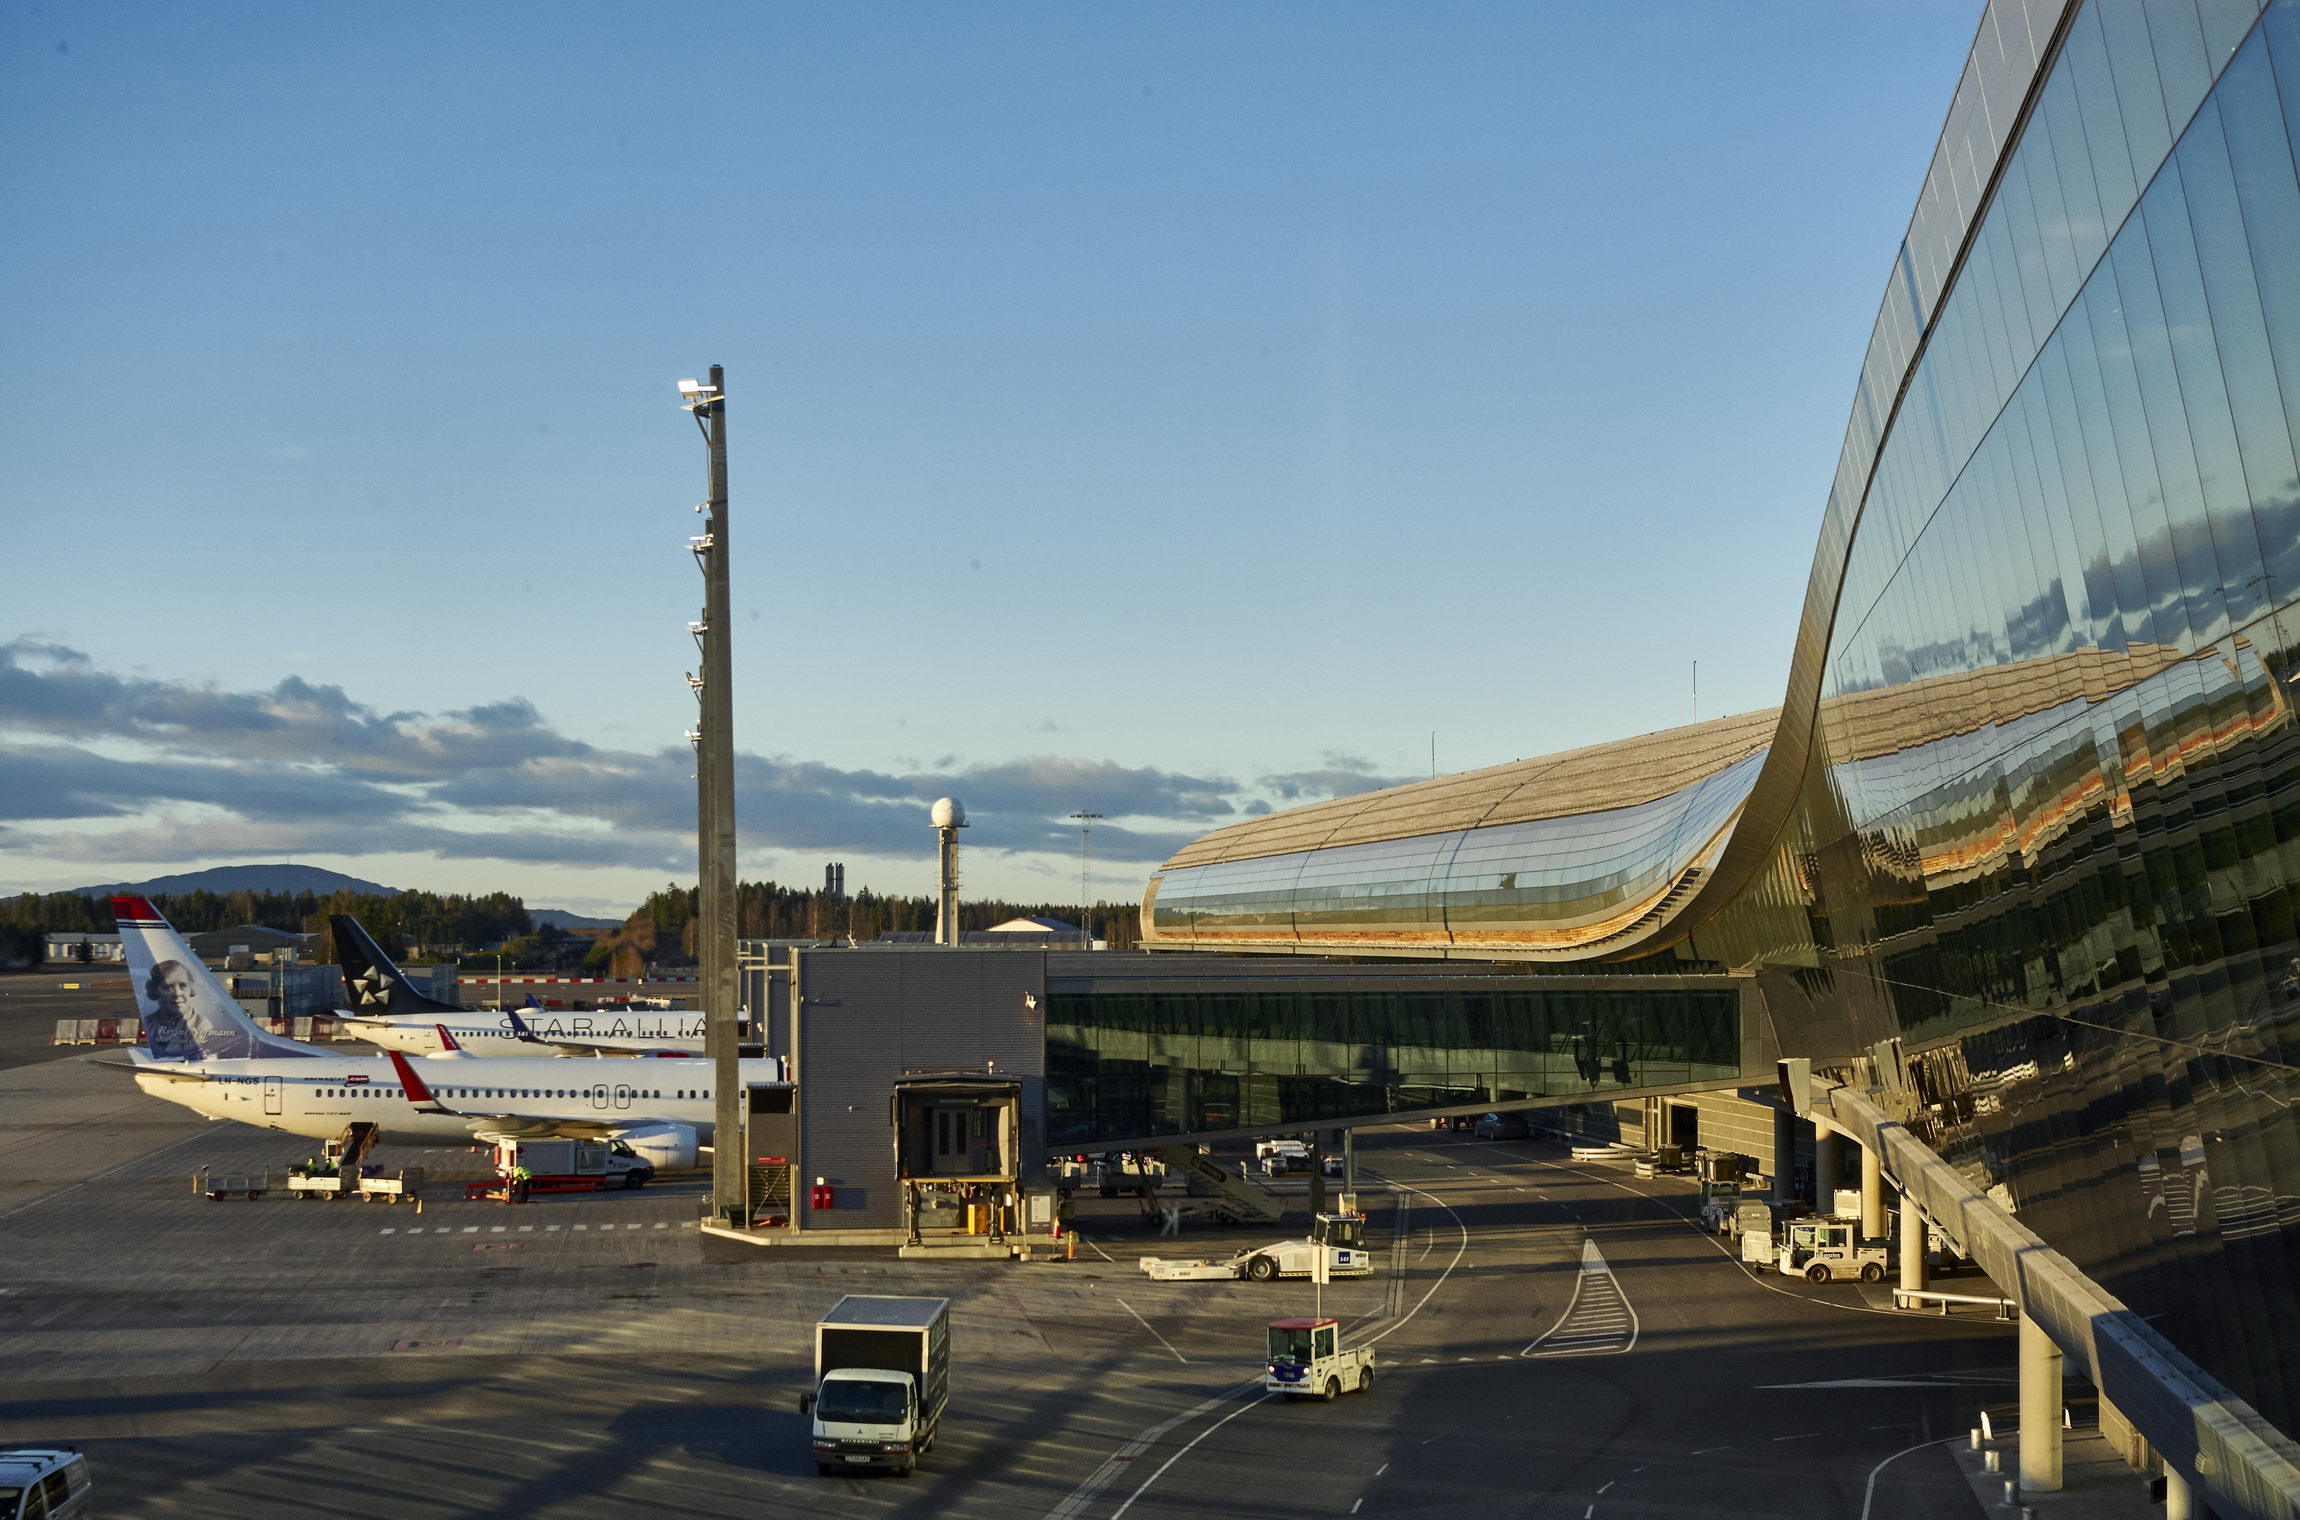 Аэропорт осло (норвегия), узнать расписание на самолет из аэропорта осло, онлайн табло прилета и вылета